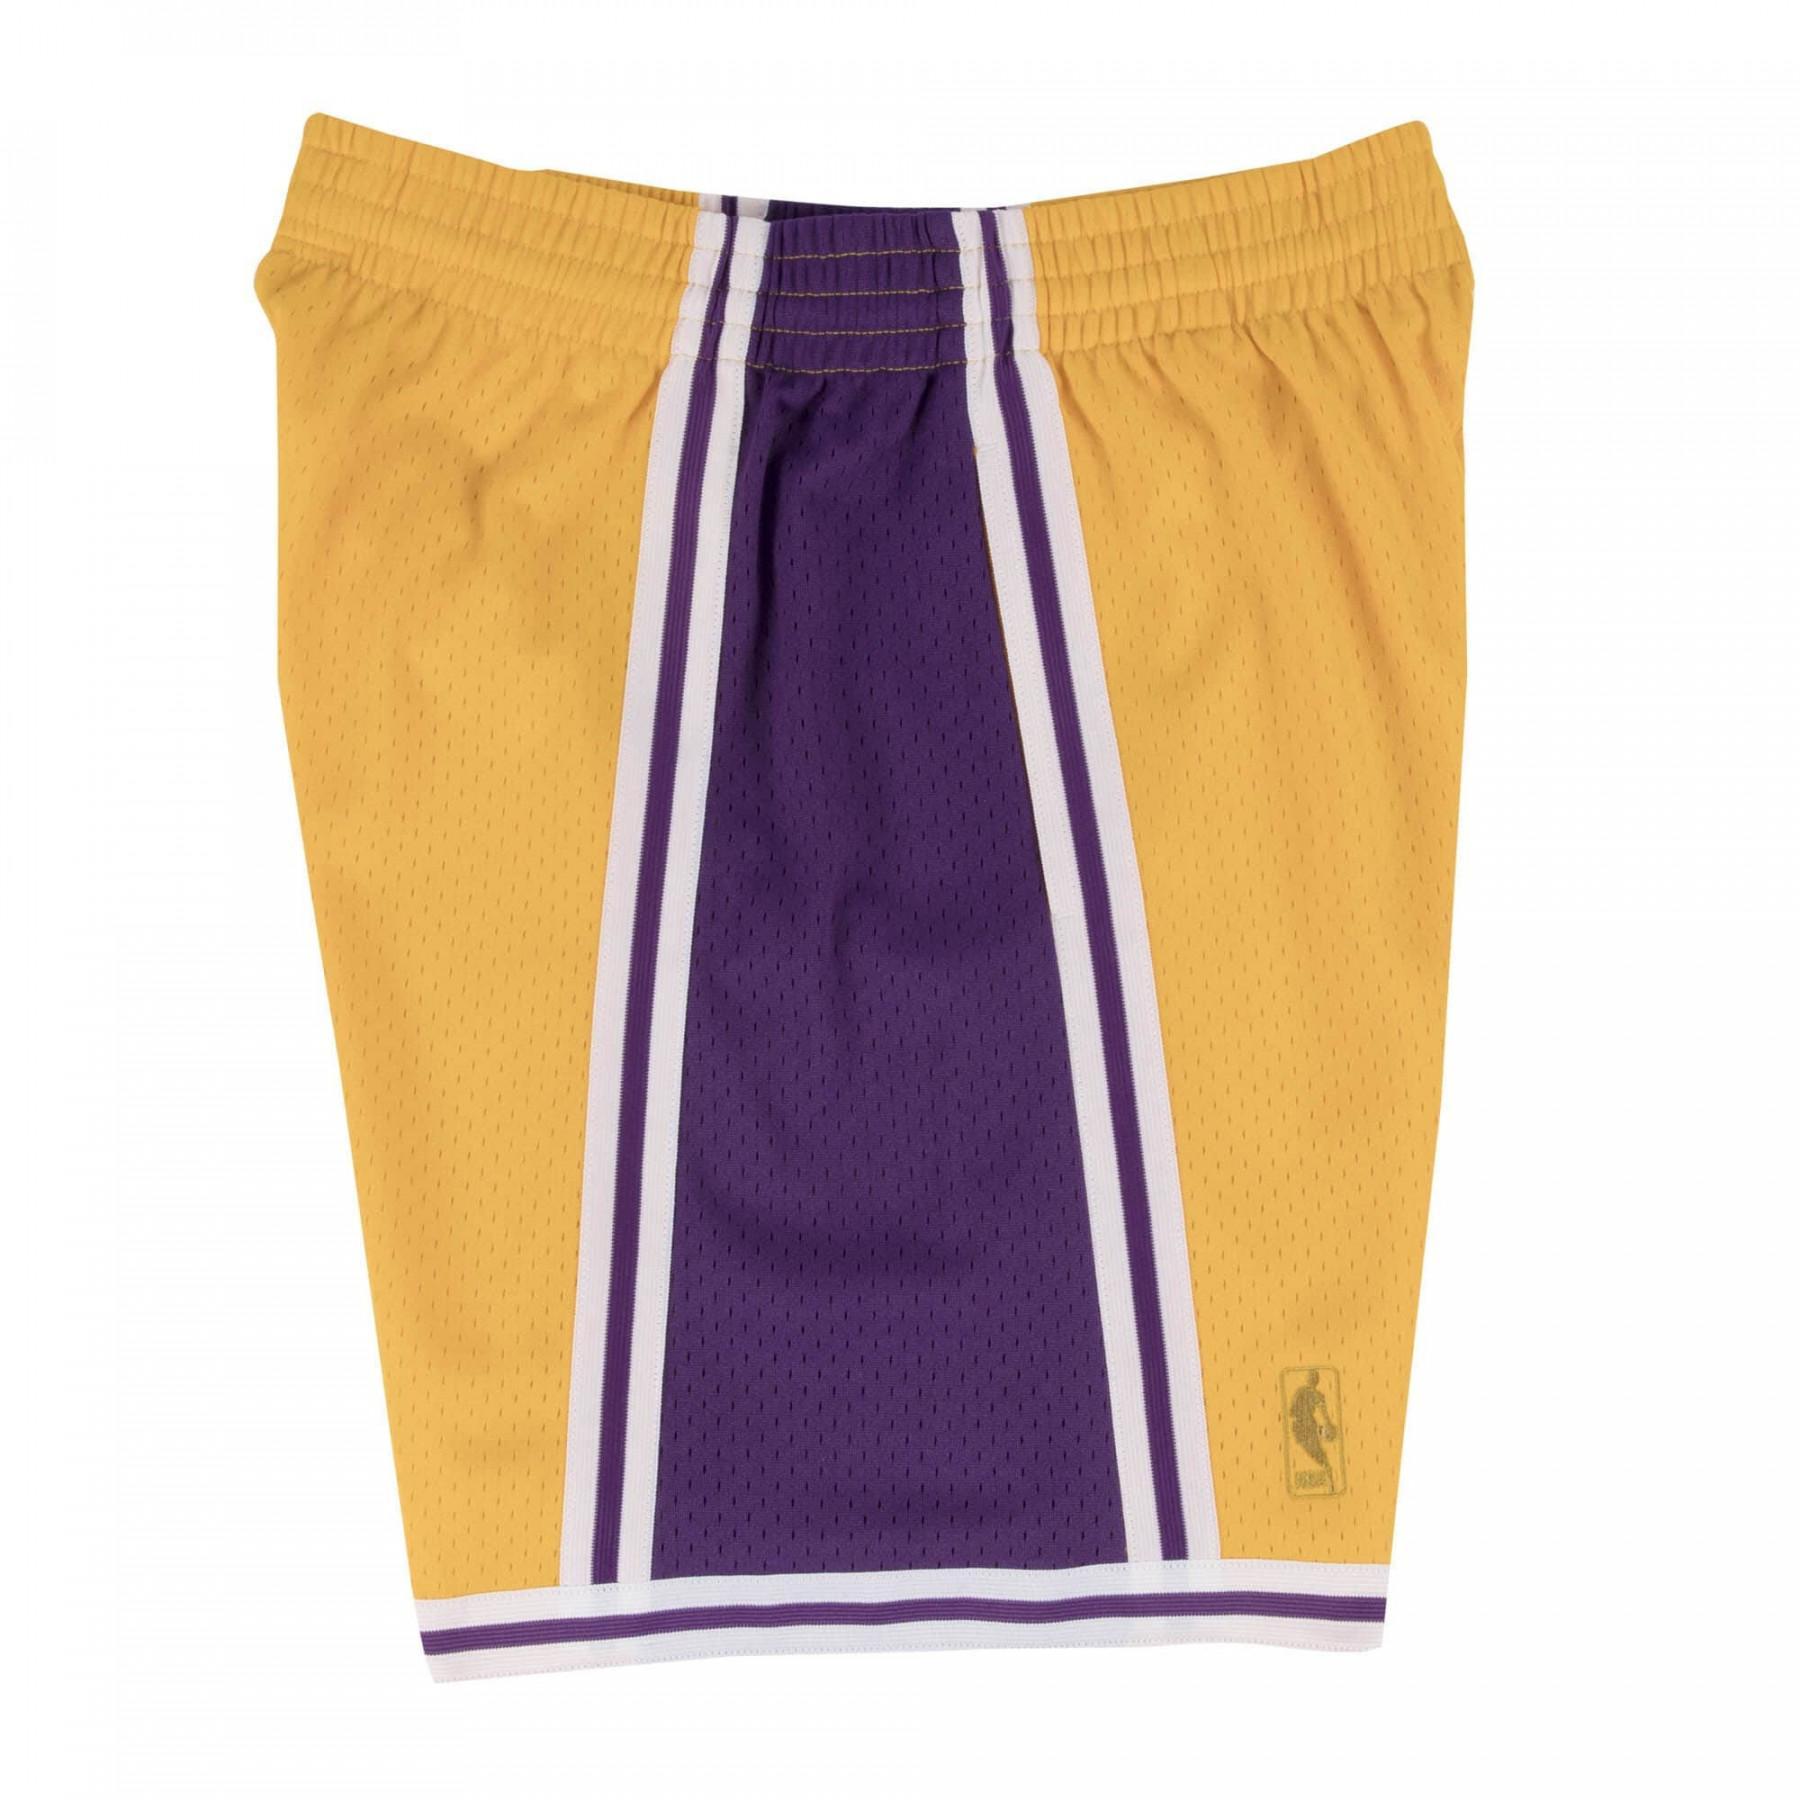 Nba swingman shorts Los Angeles Lakers